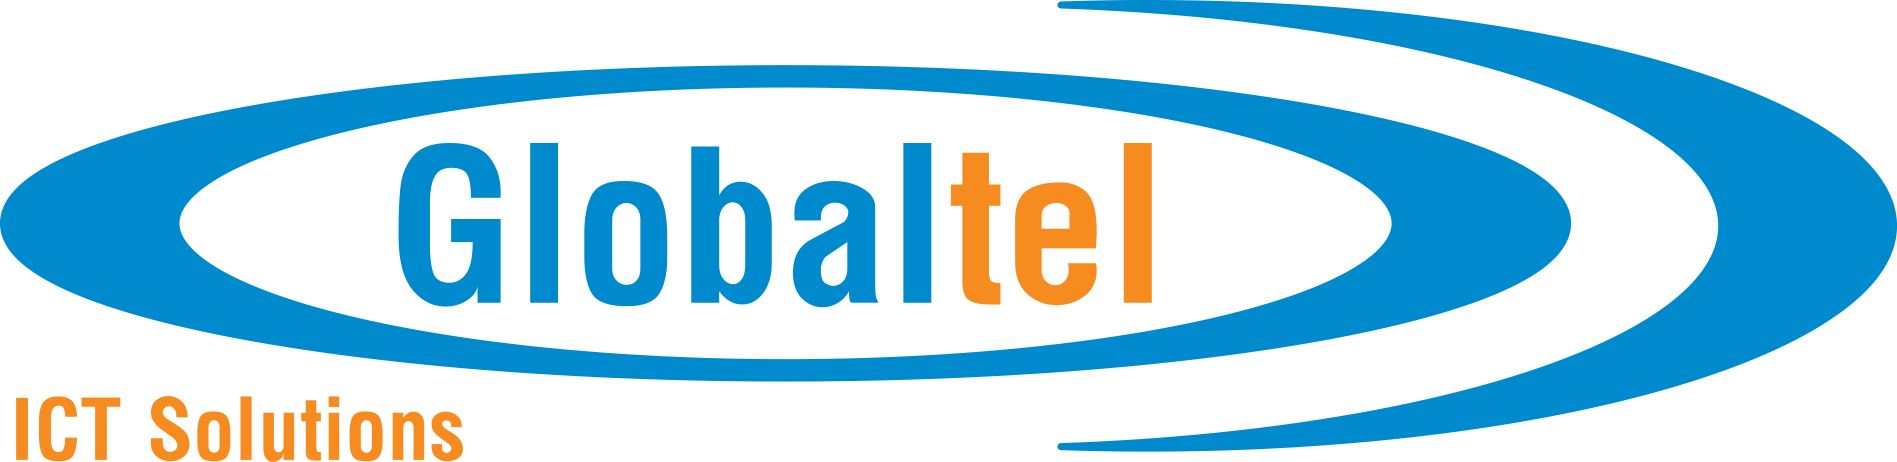 logo-globaltel